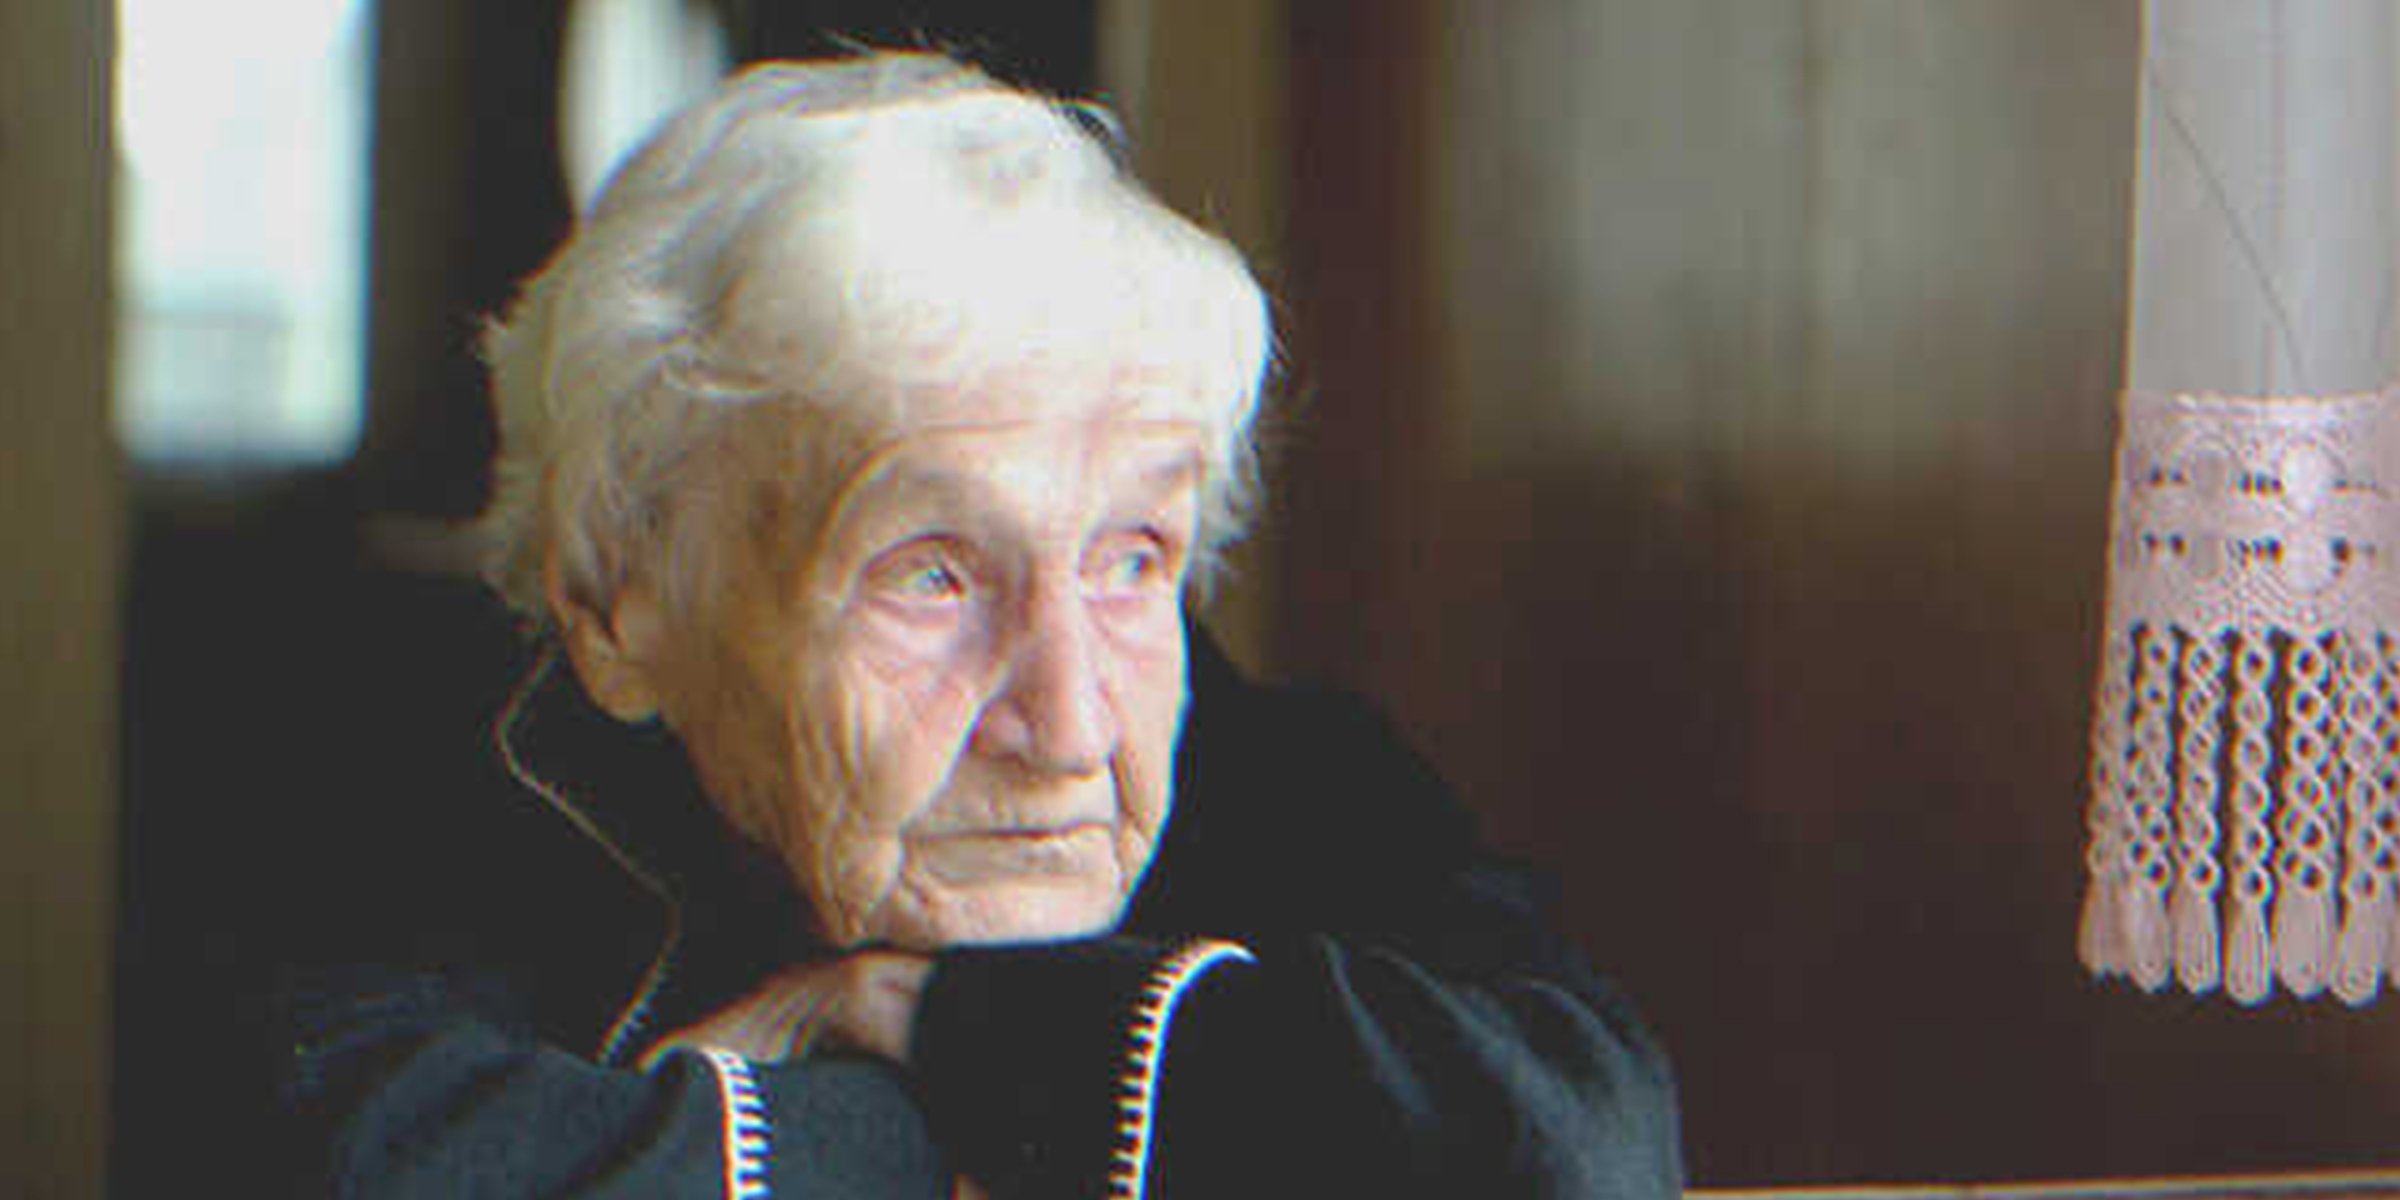 Alte Frau schaut traurig drein | Quelle: Shutterstock